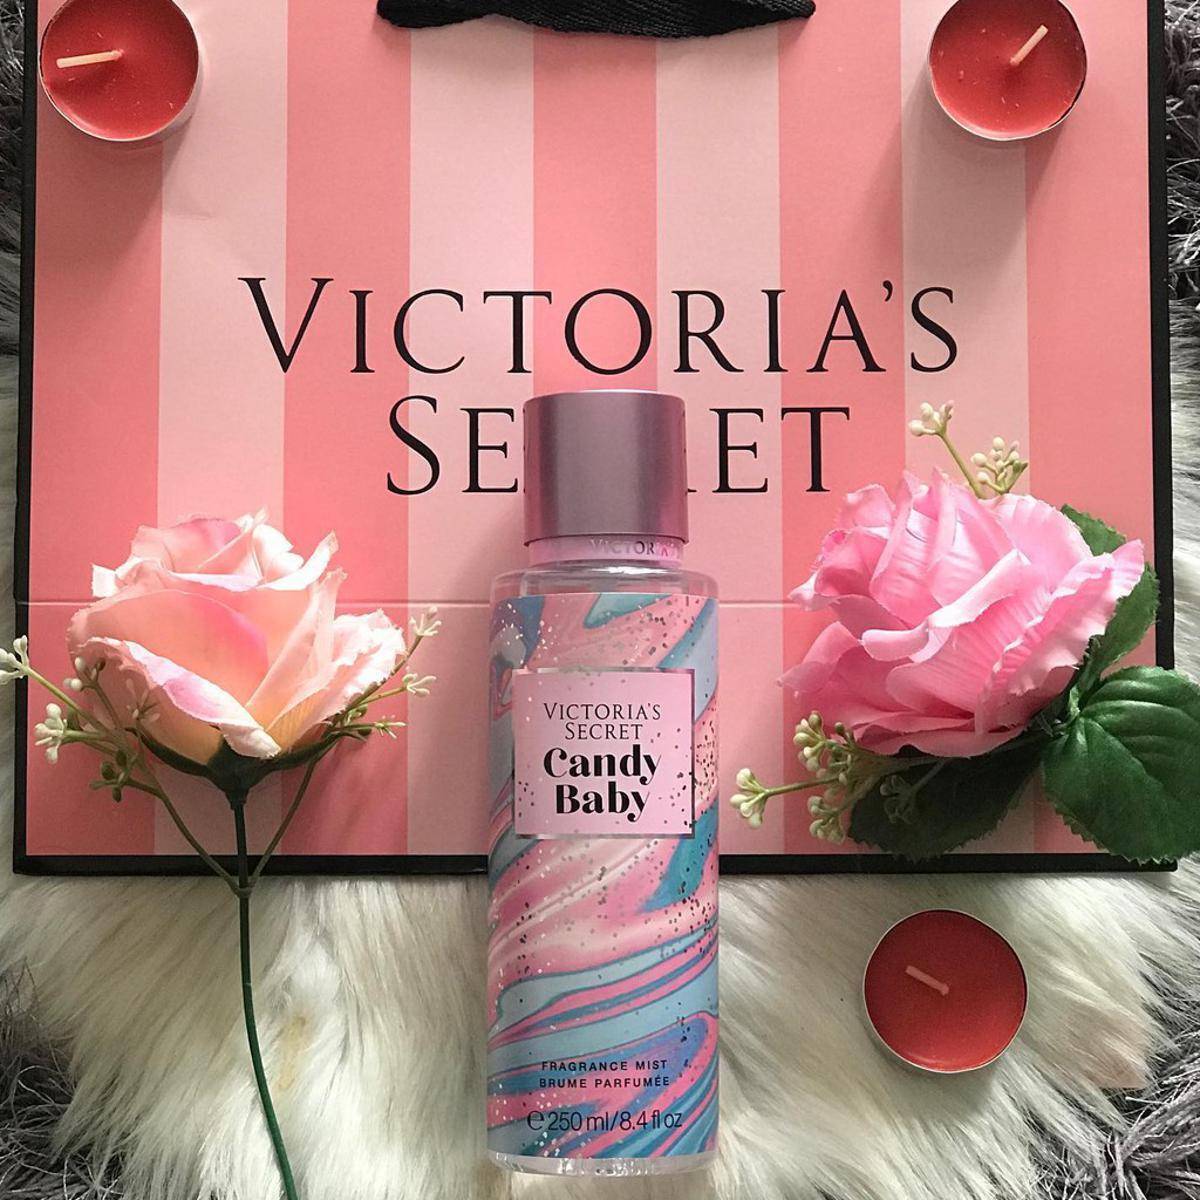 Victoria's Secret LOVE SPELL Fragrance Body Mist 8.4 fl oz $ 12 each